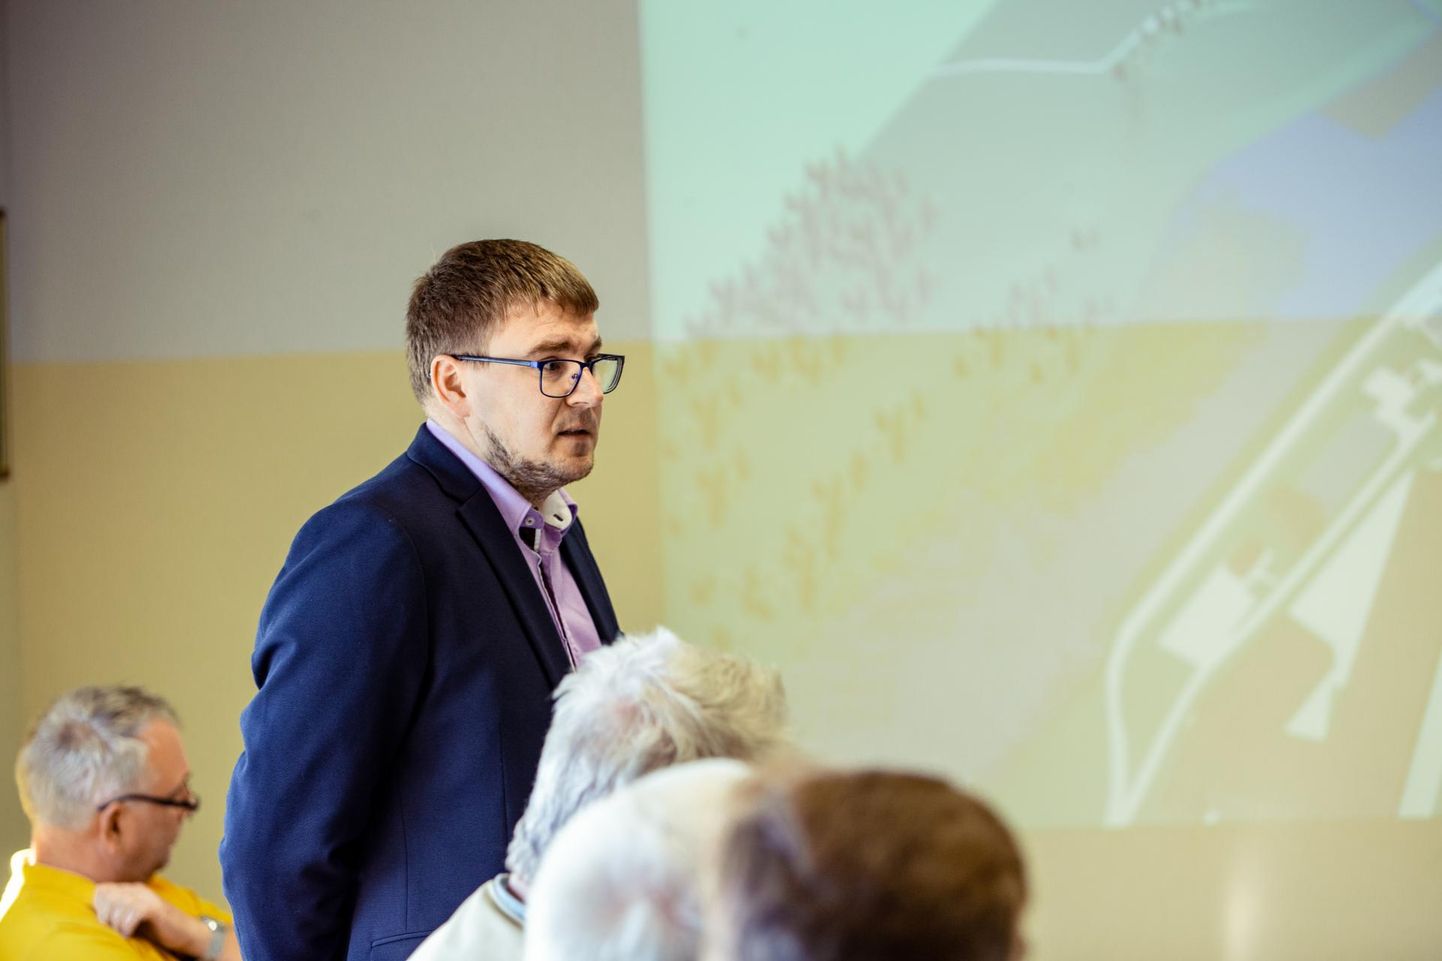 Keskkonnaagentuuri asedirektor Peep Siim kiitis Tori vanas vallamajas Pärnu jõe ümarlaual tööde head edenemist Sindi kärestikul.